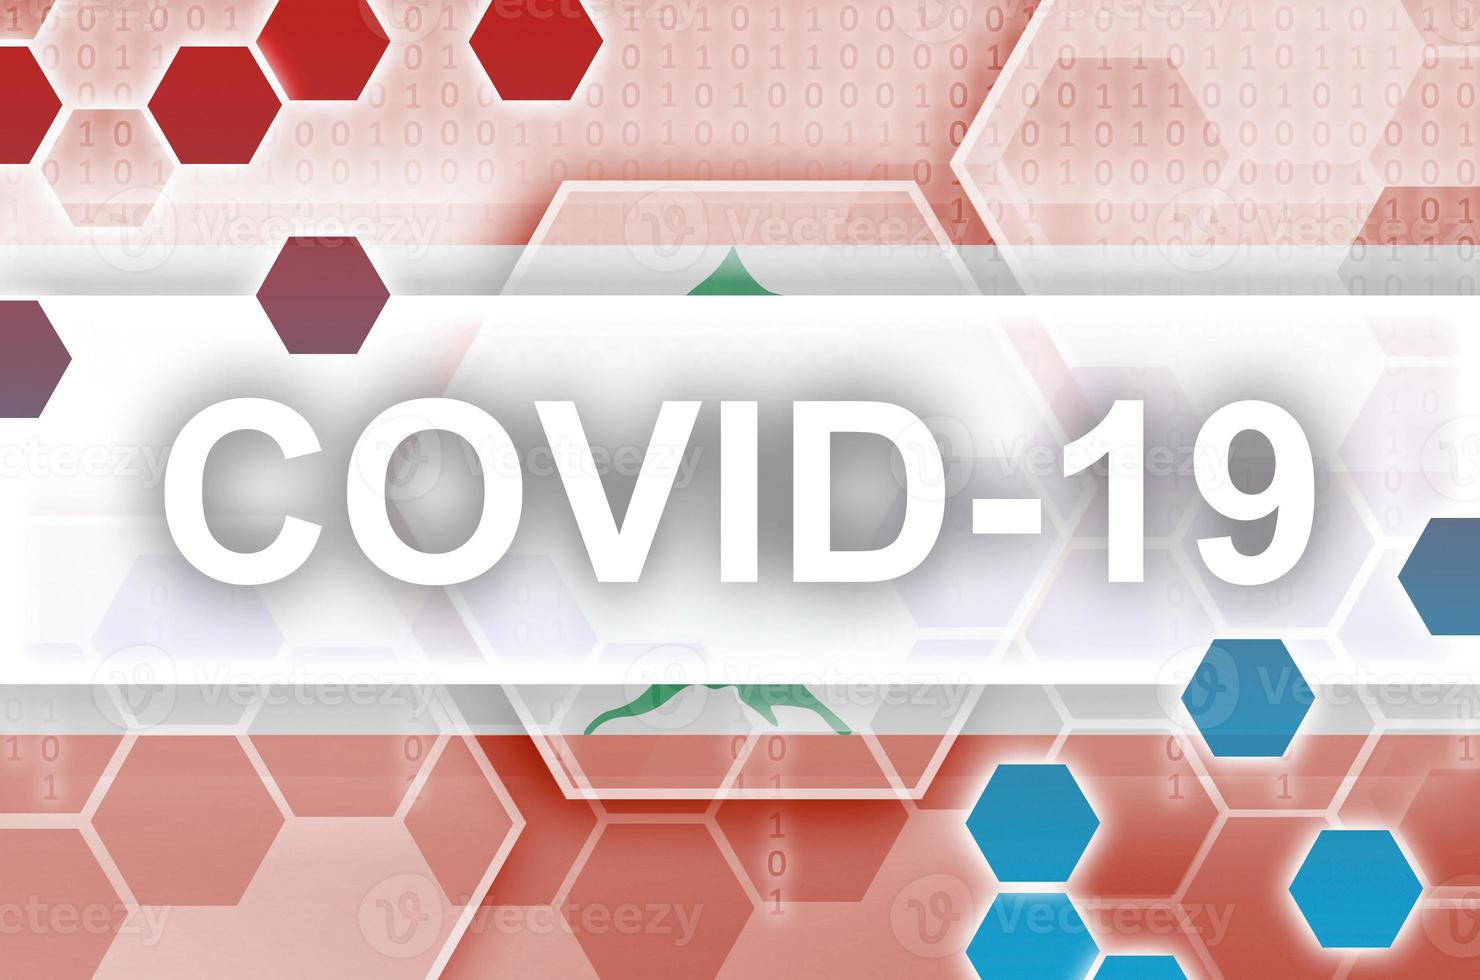 libanon flagga och trogen digital abstrakt sammansättning med covid-19 inskrift. coronavirus utbrott begrepp foto